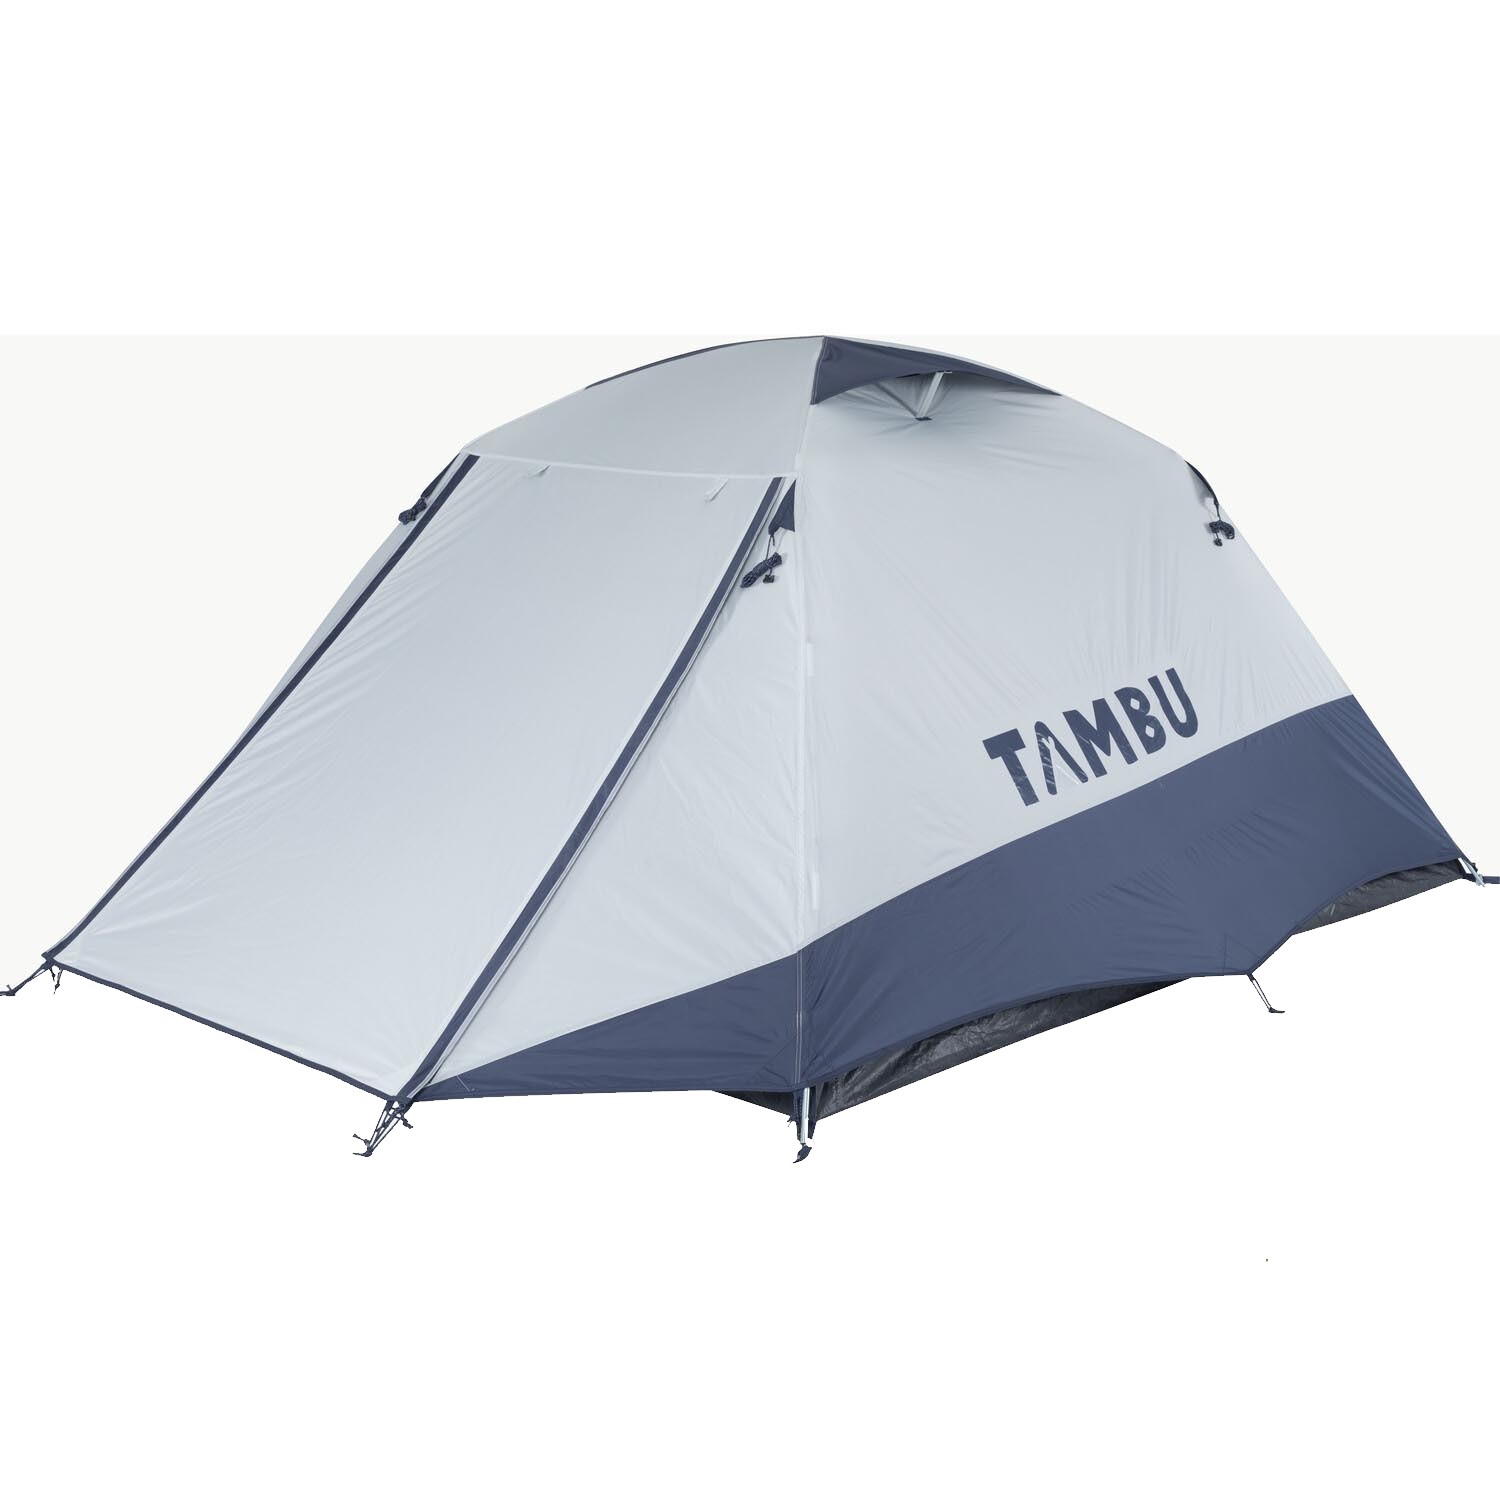 Tambu GAMBUJA Dome Tent - Three Image 2